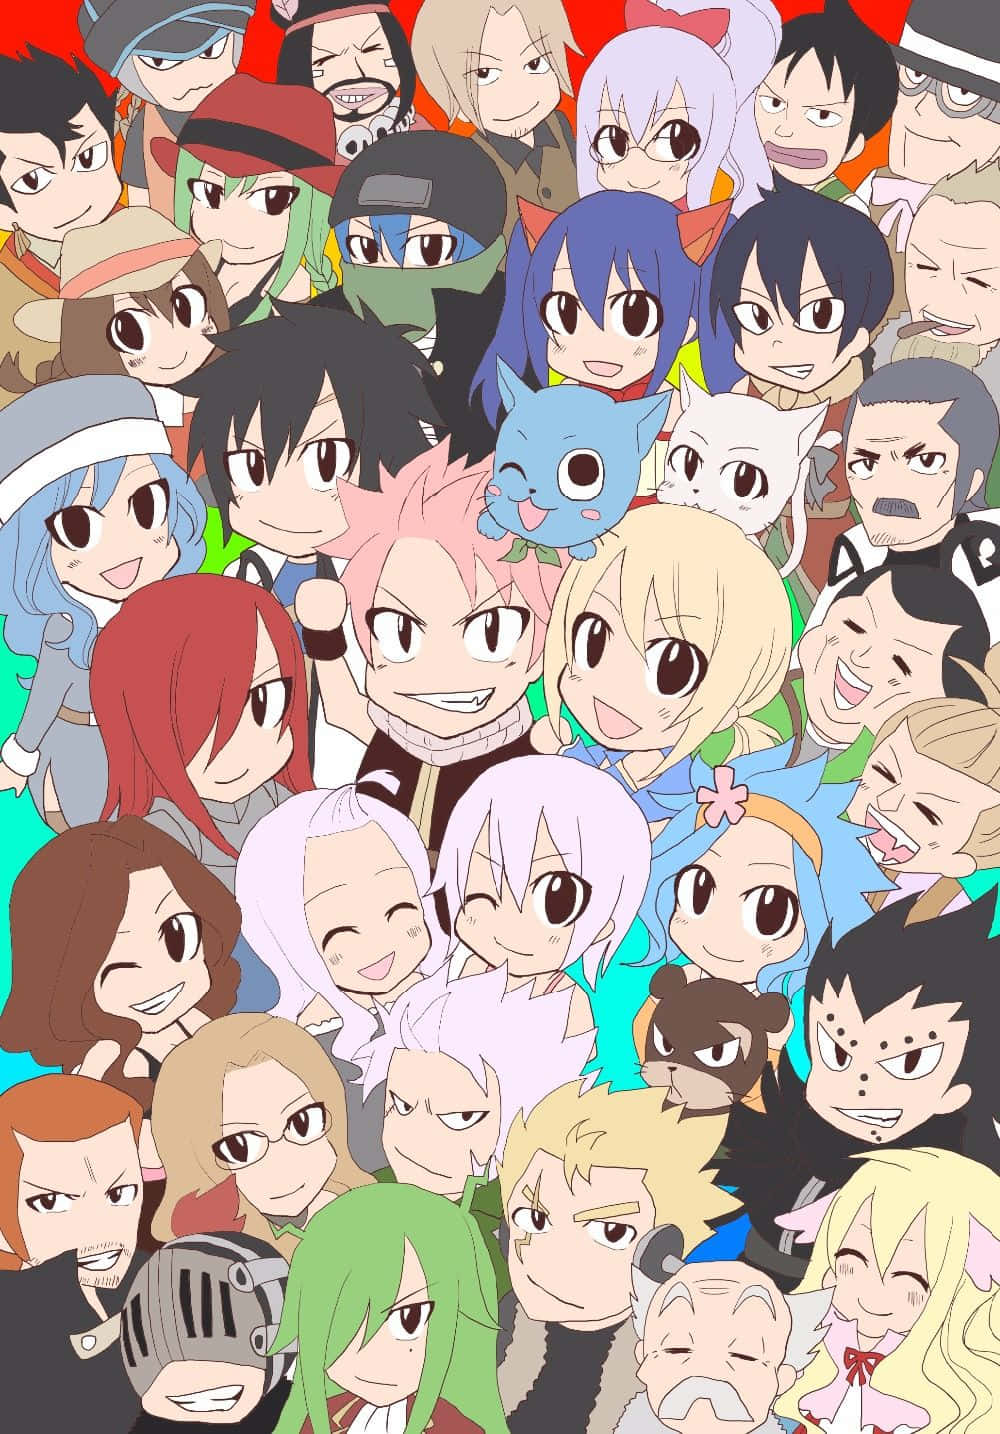 Engruppe Anime-karakterer Samlet Sammen.